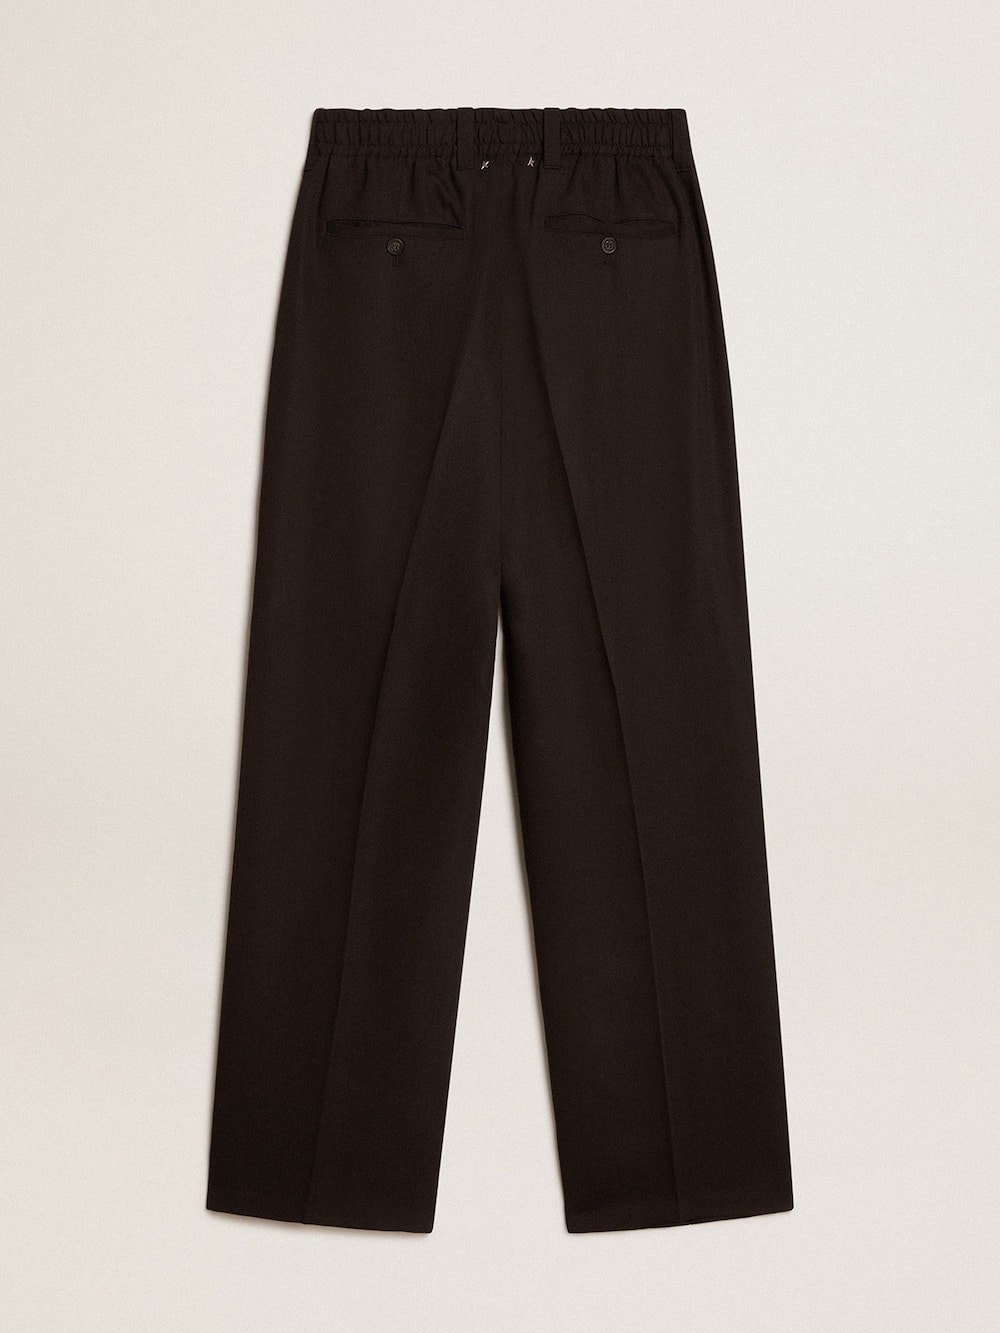 Golden Goose - Pantalone in misto lana e viscosa di colore nero in 